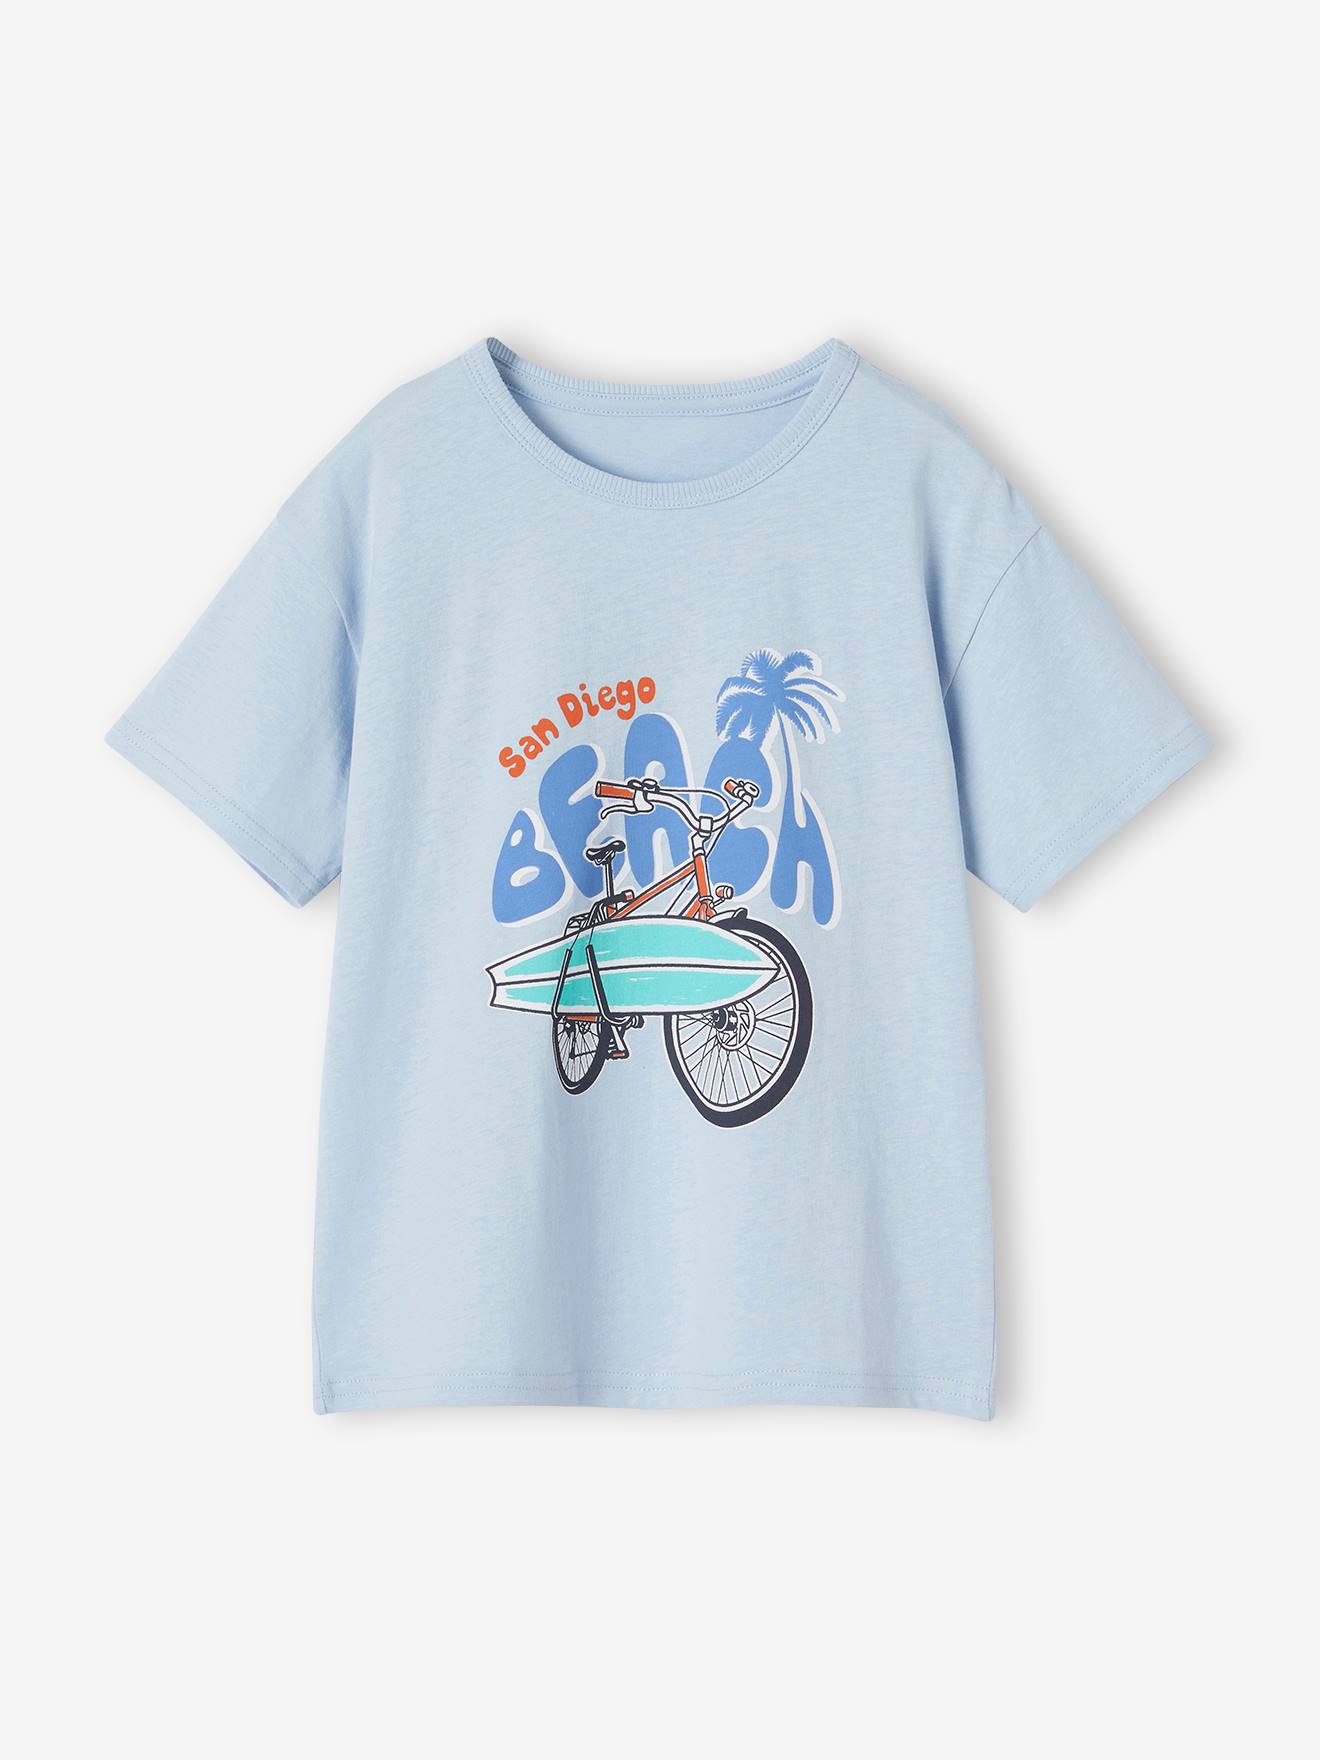 T-shirt motifs graphiques garçon manches courtes bleu ciel